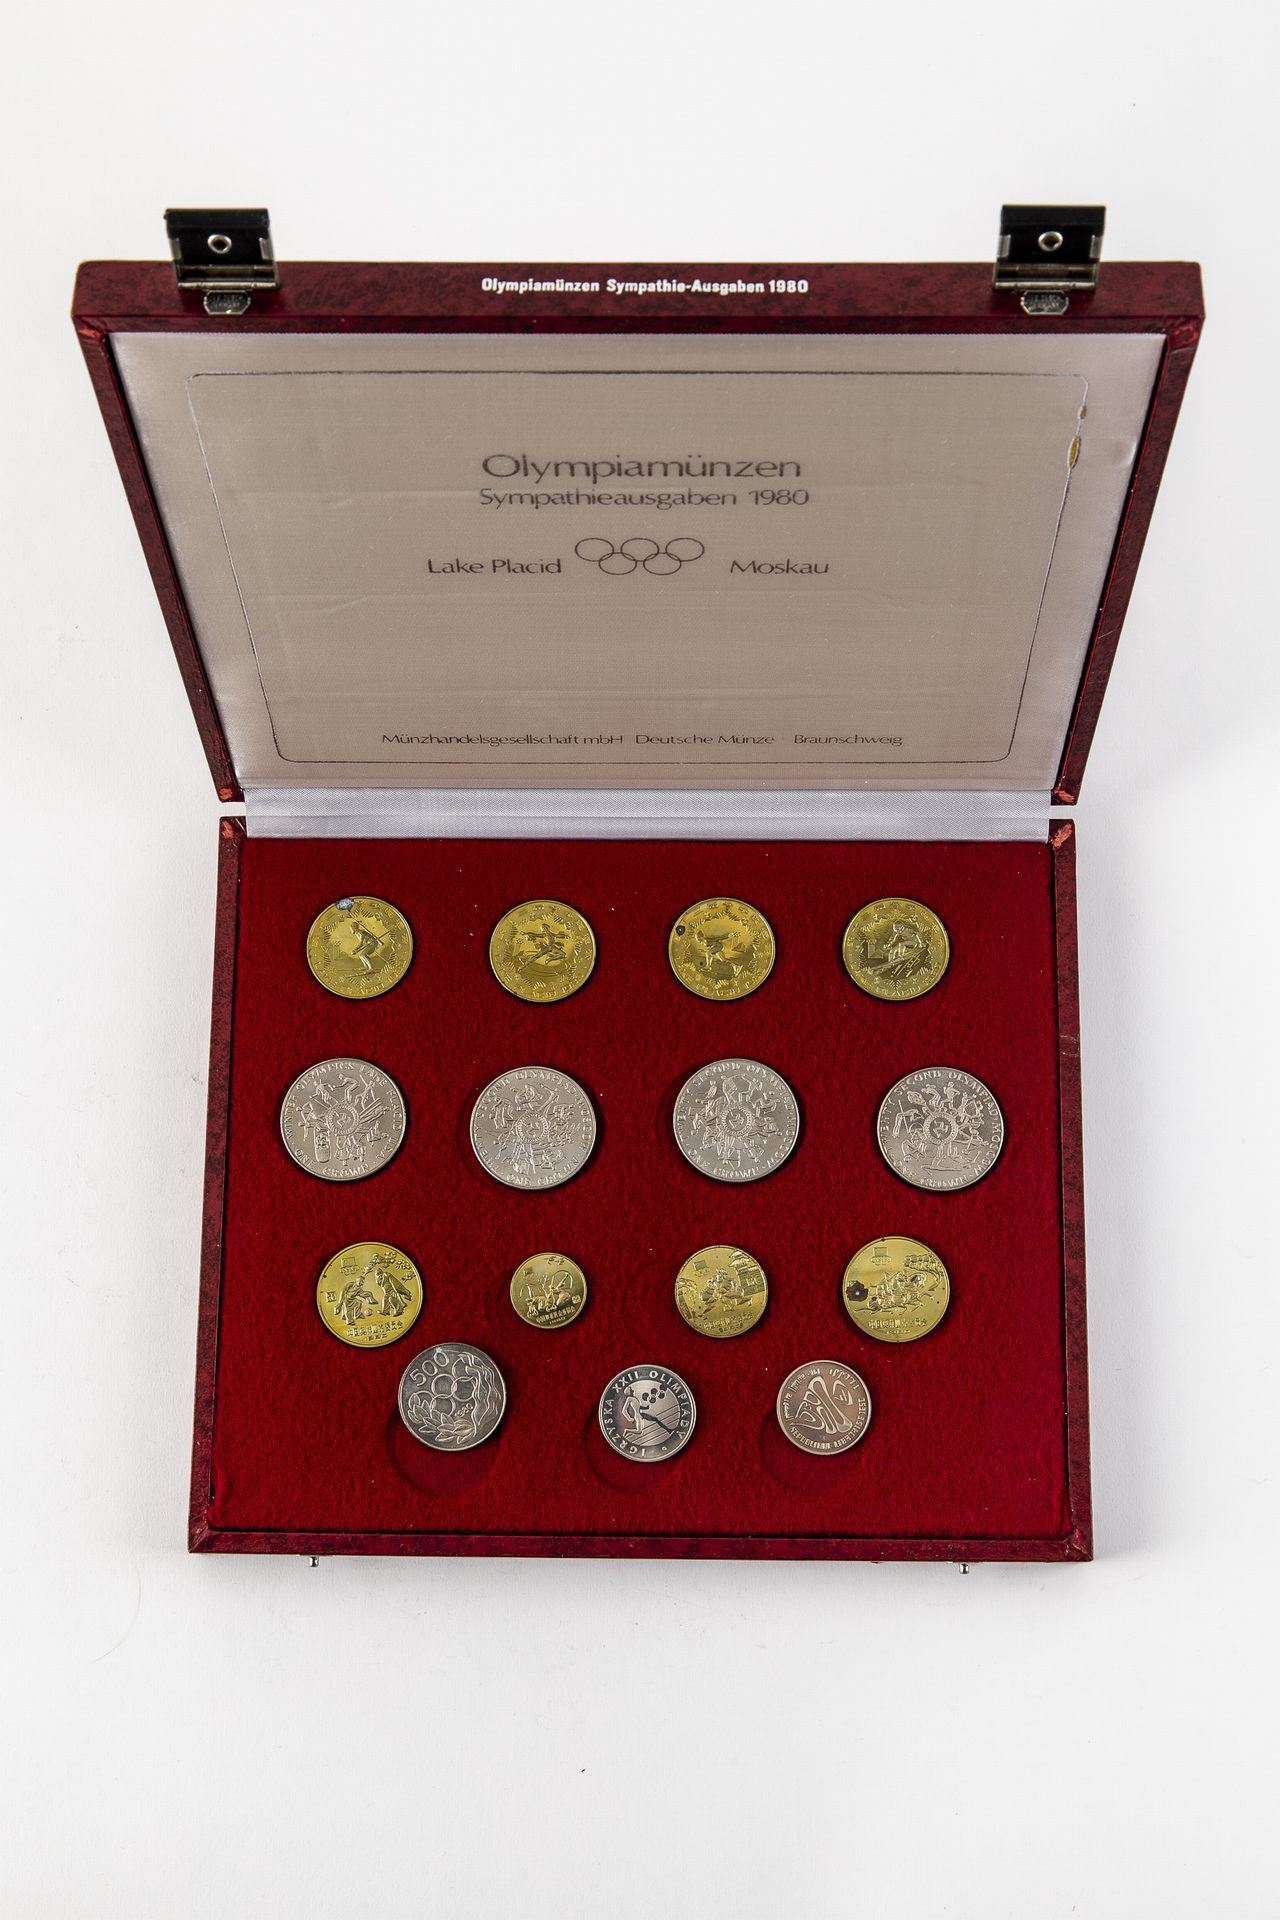 Olympiamünzen Sympathie-Ausgaben 1980 - Bild 2 aus 2